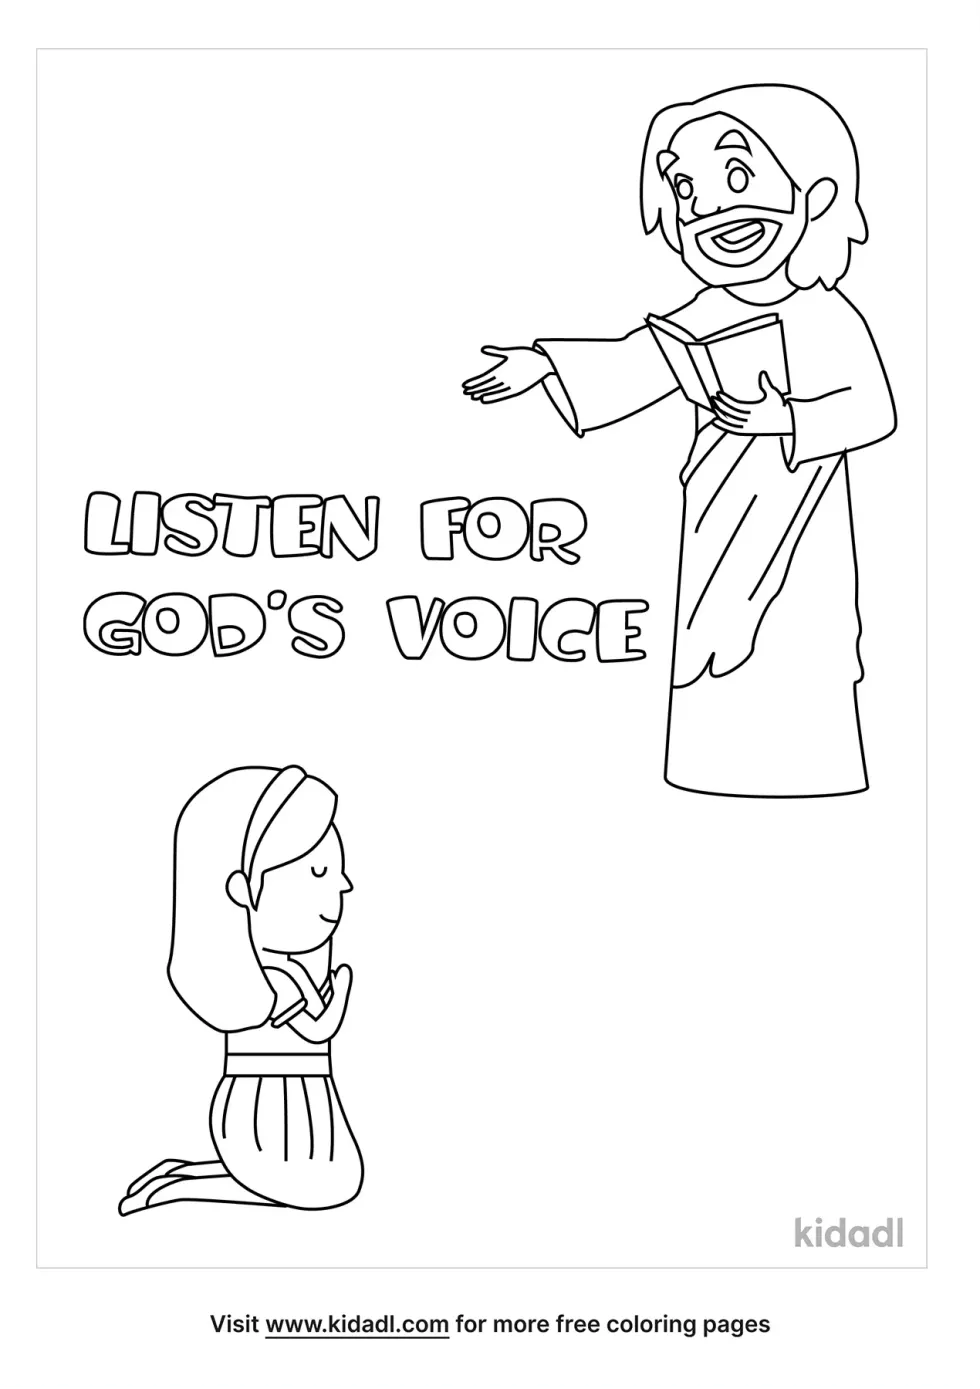 Listen For God's Voice